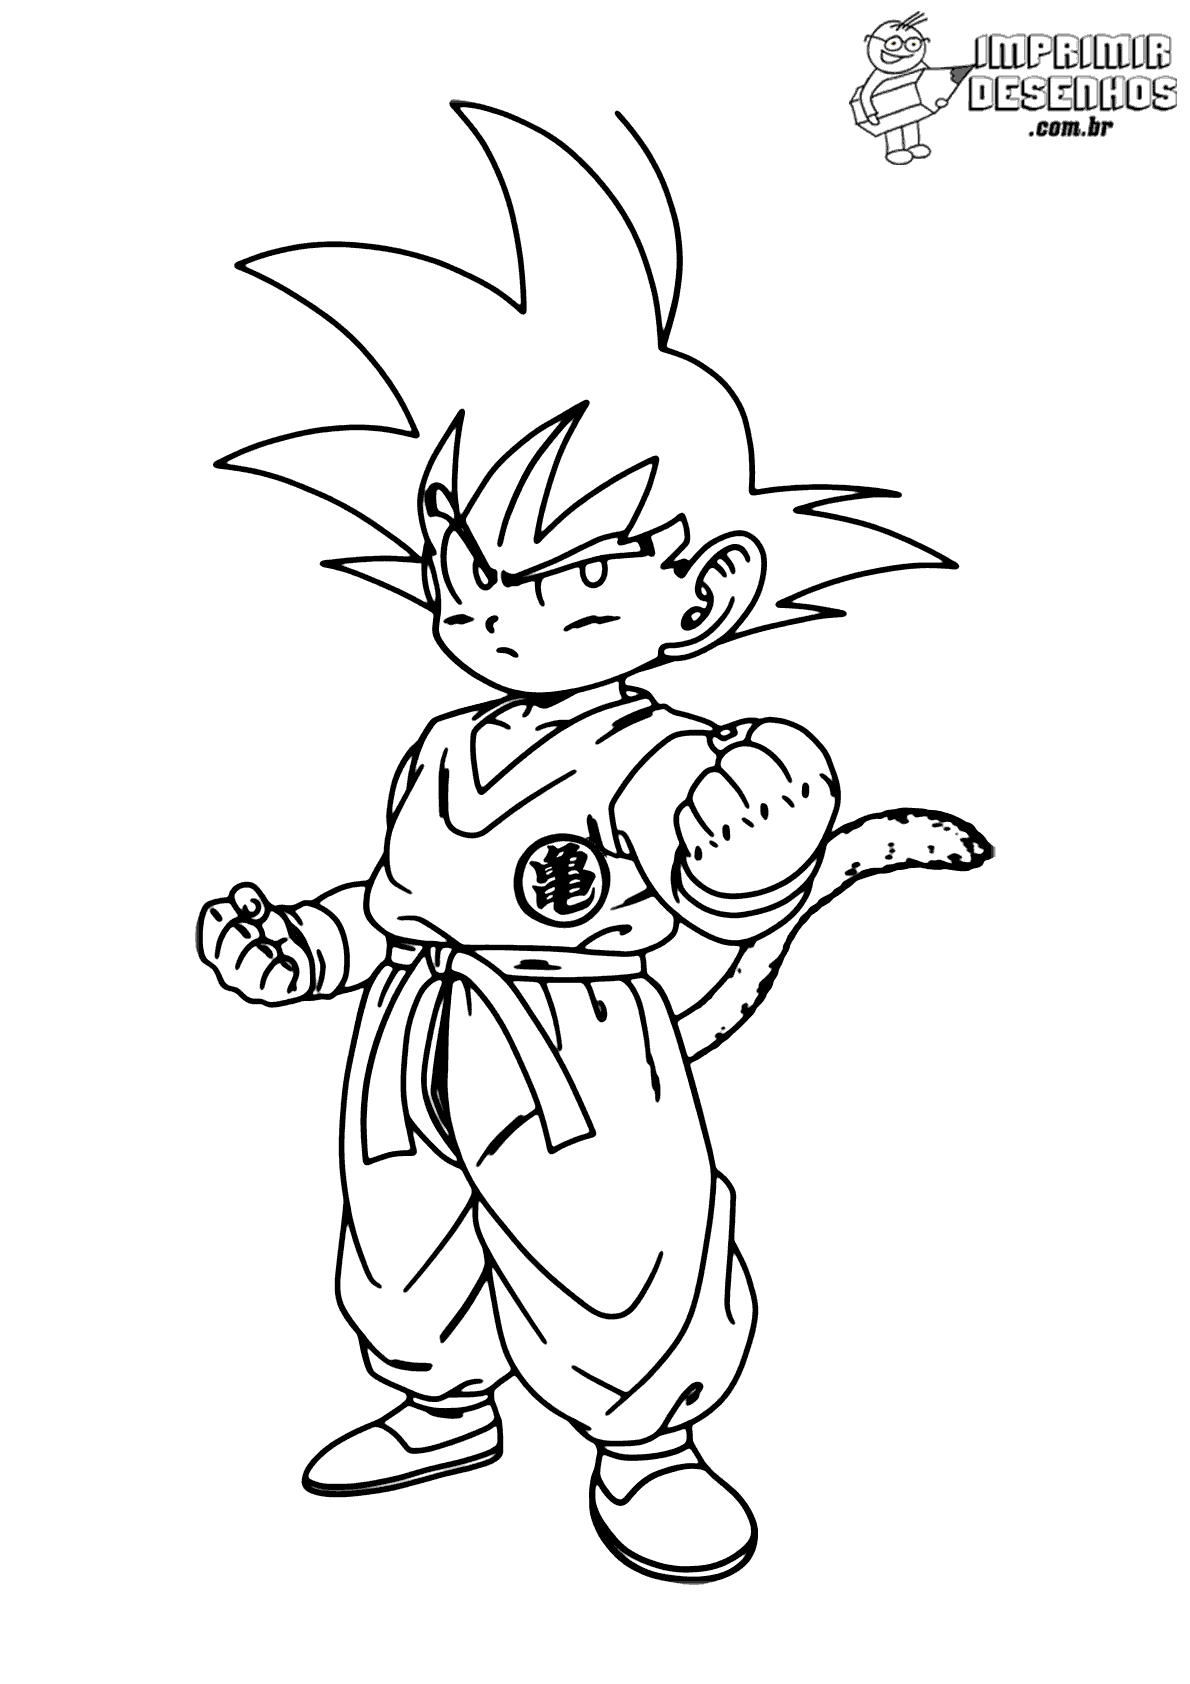 Goku clássico com rabo para colorir